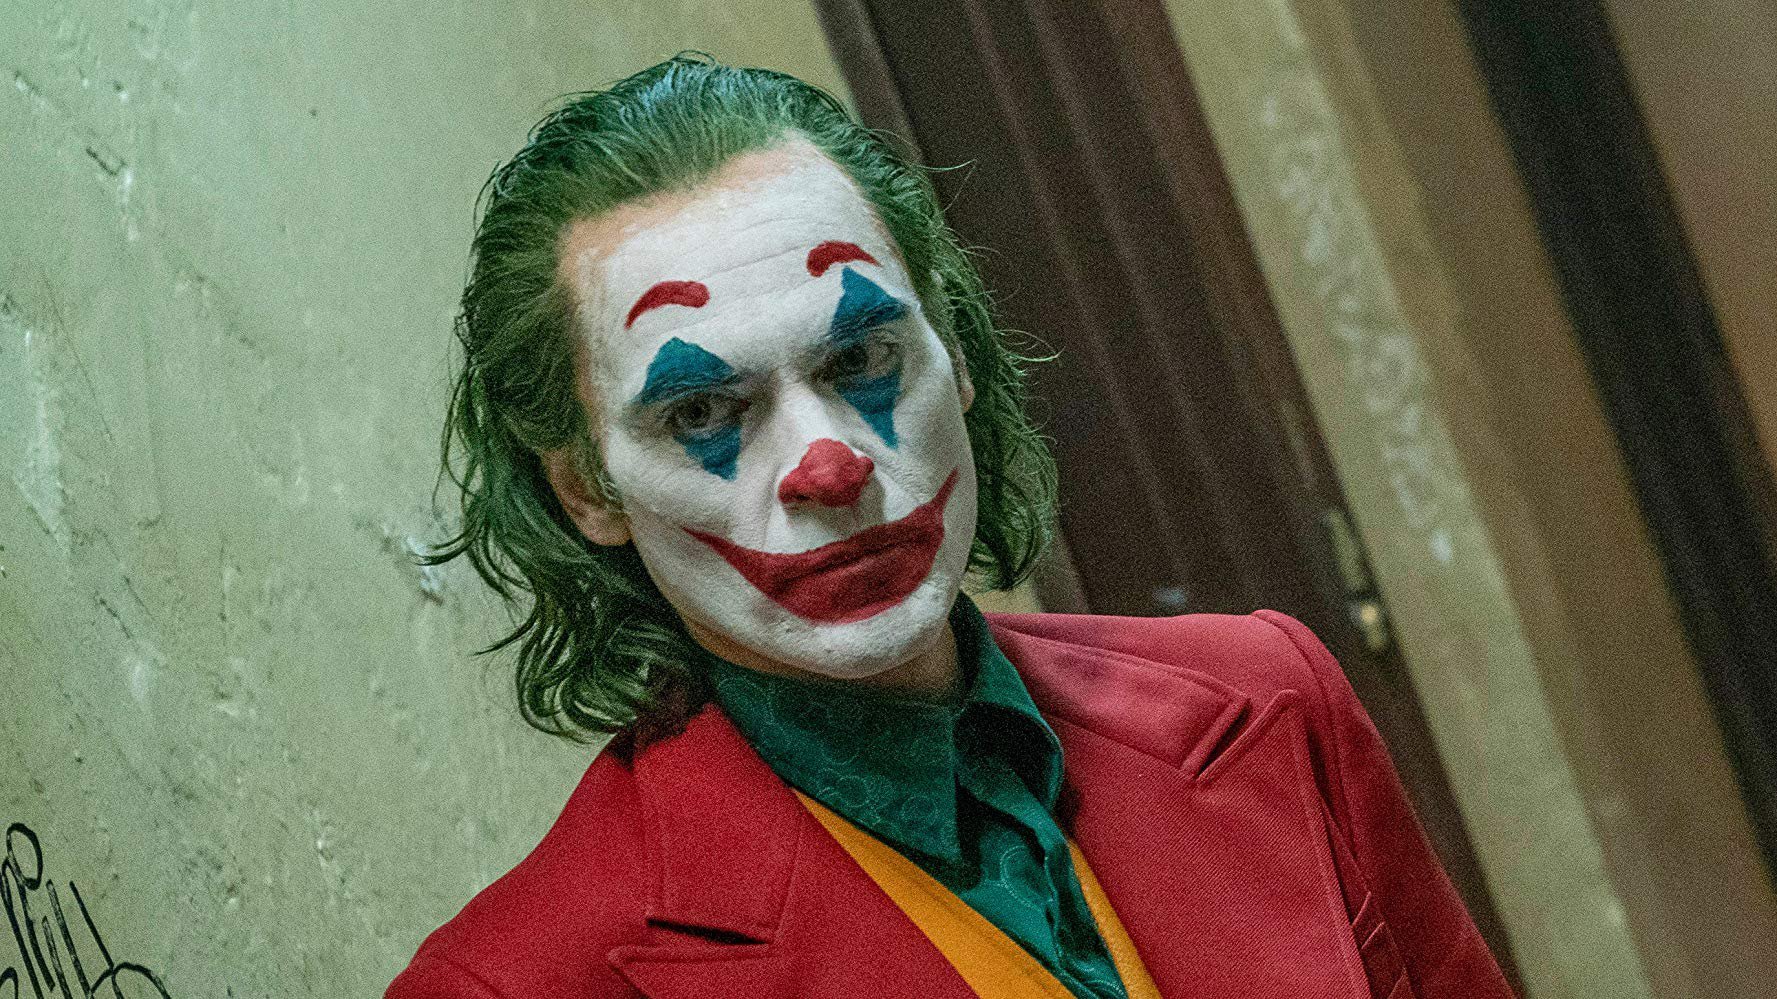 Ήρωας είναι ο Δημήτρης Μπουρνής, όχι ο Joker